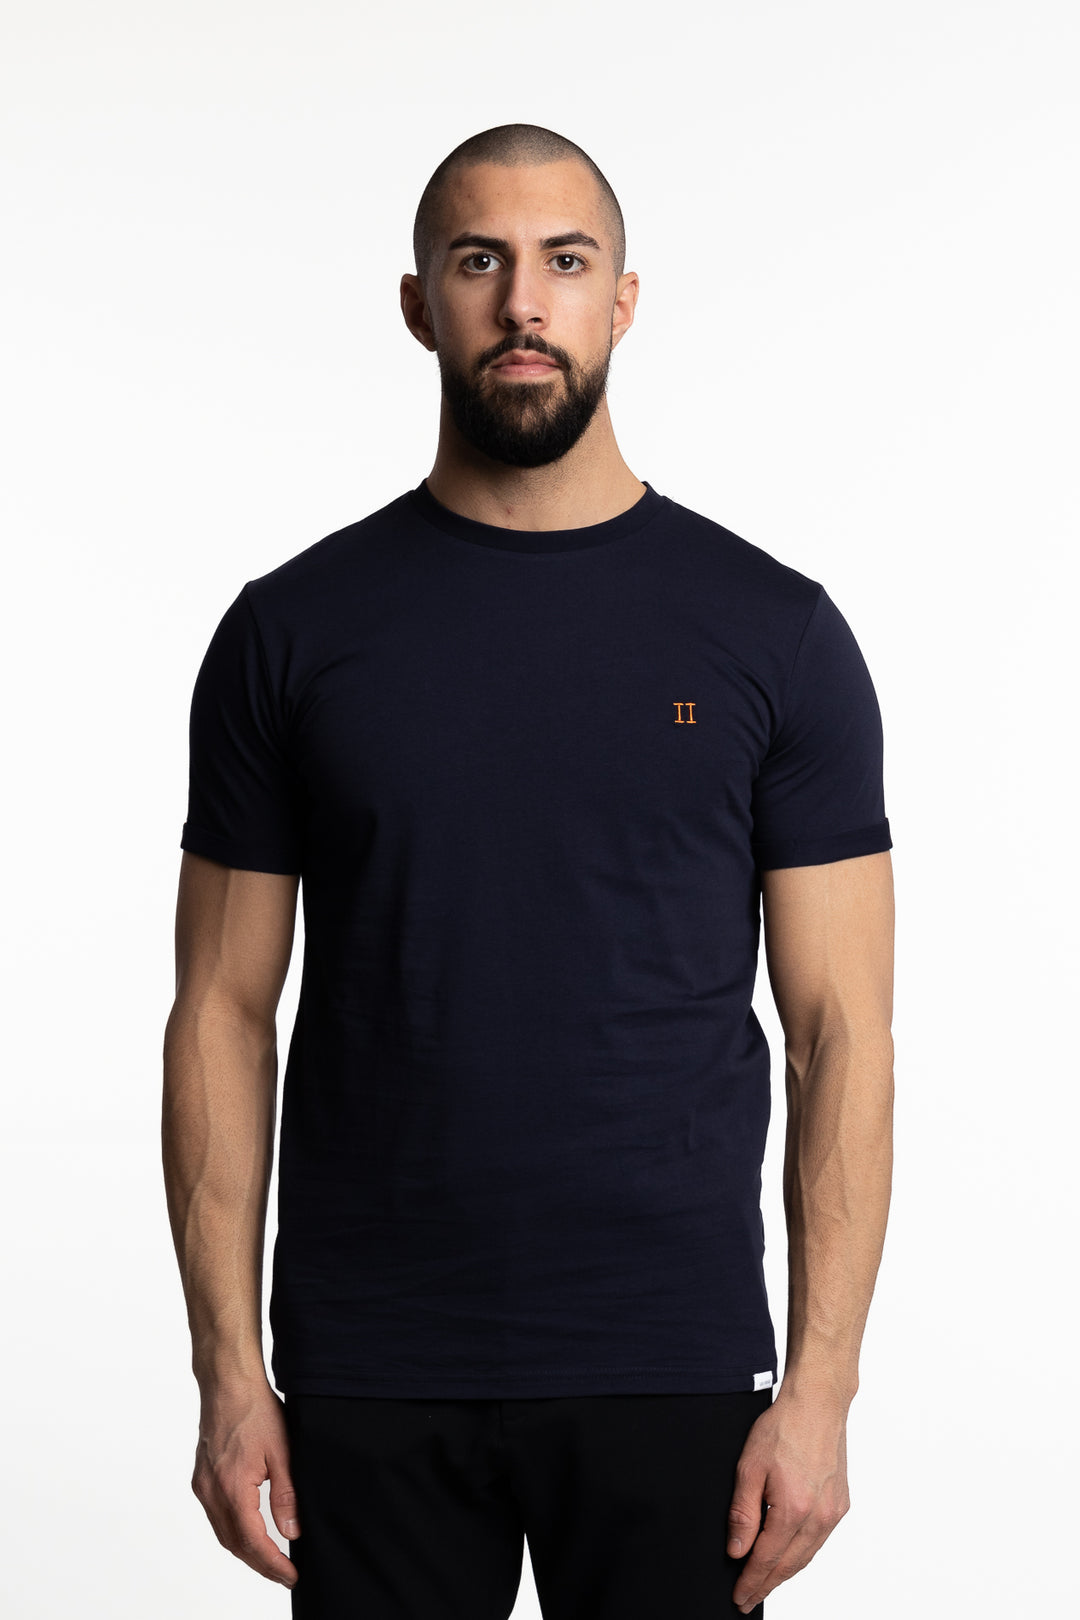 Nørregaard T-shirt Dark Navy